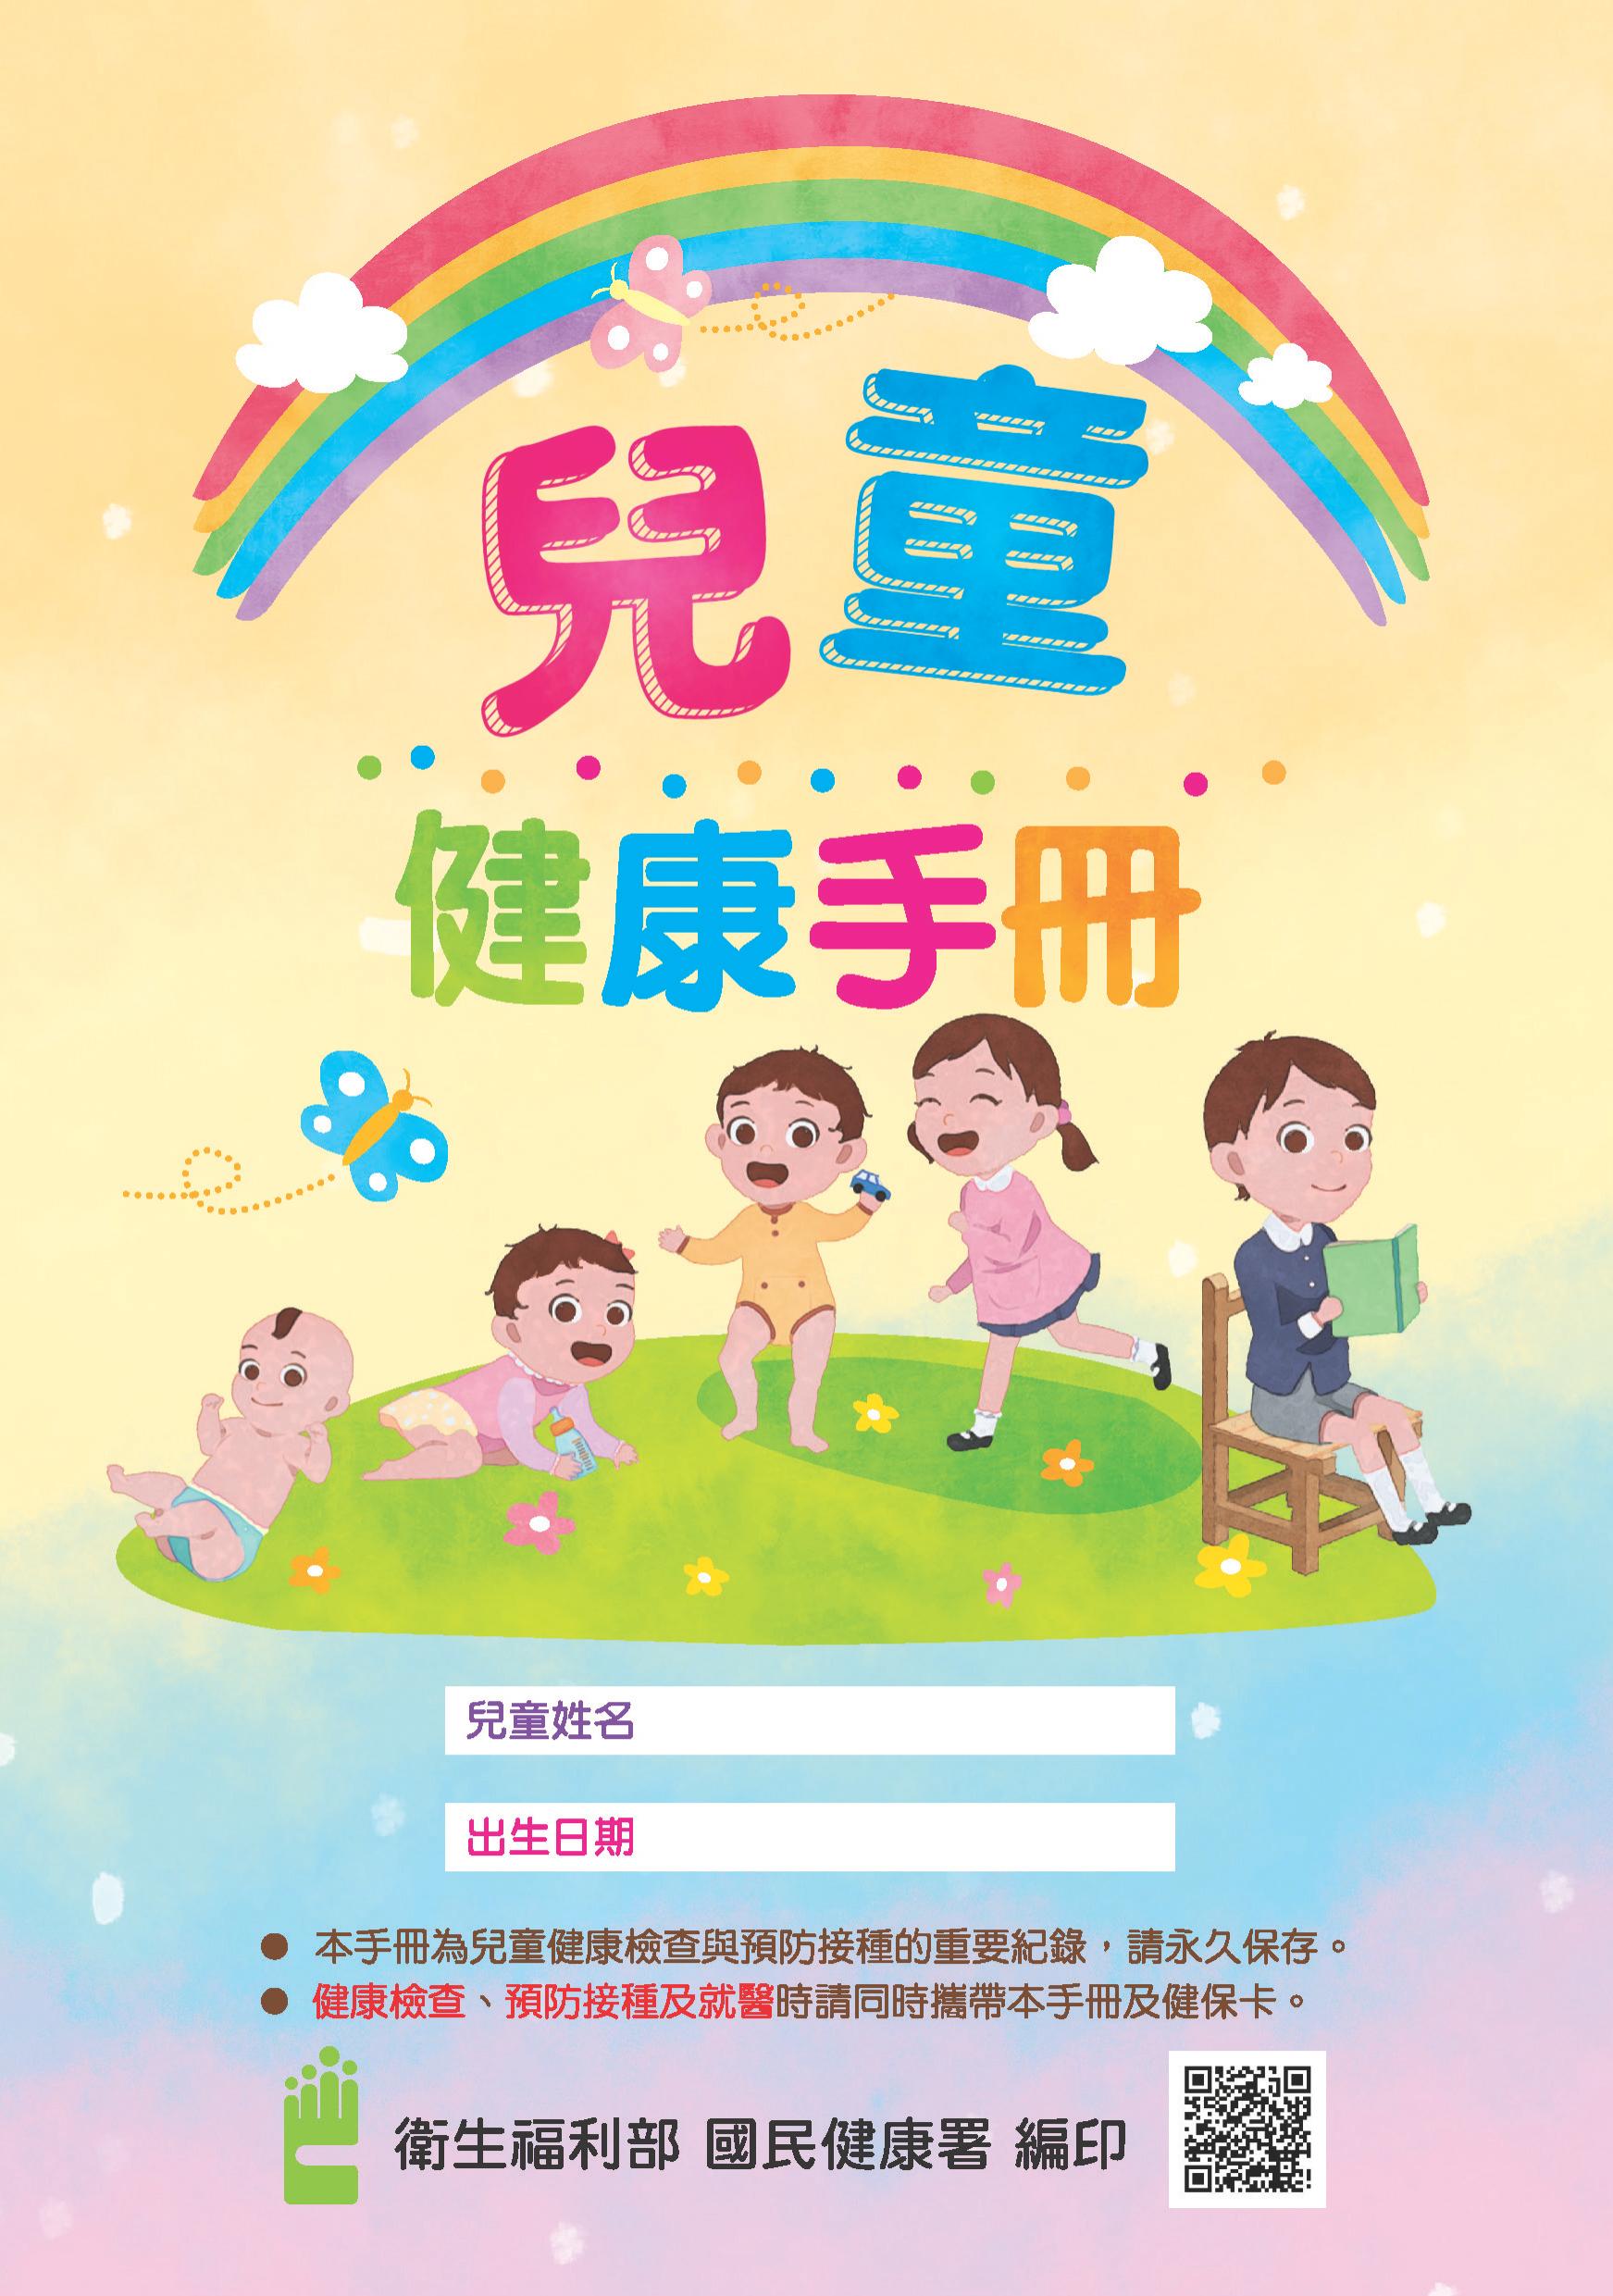 兒童健康手冊(中文版)文章照片